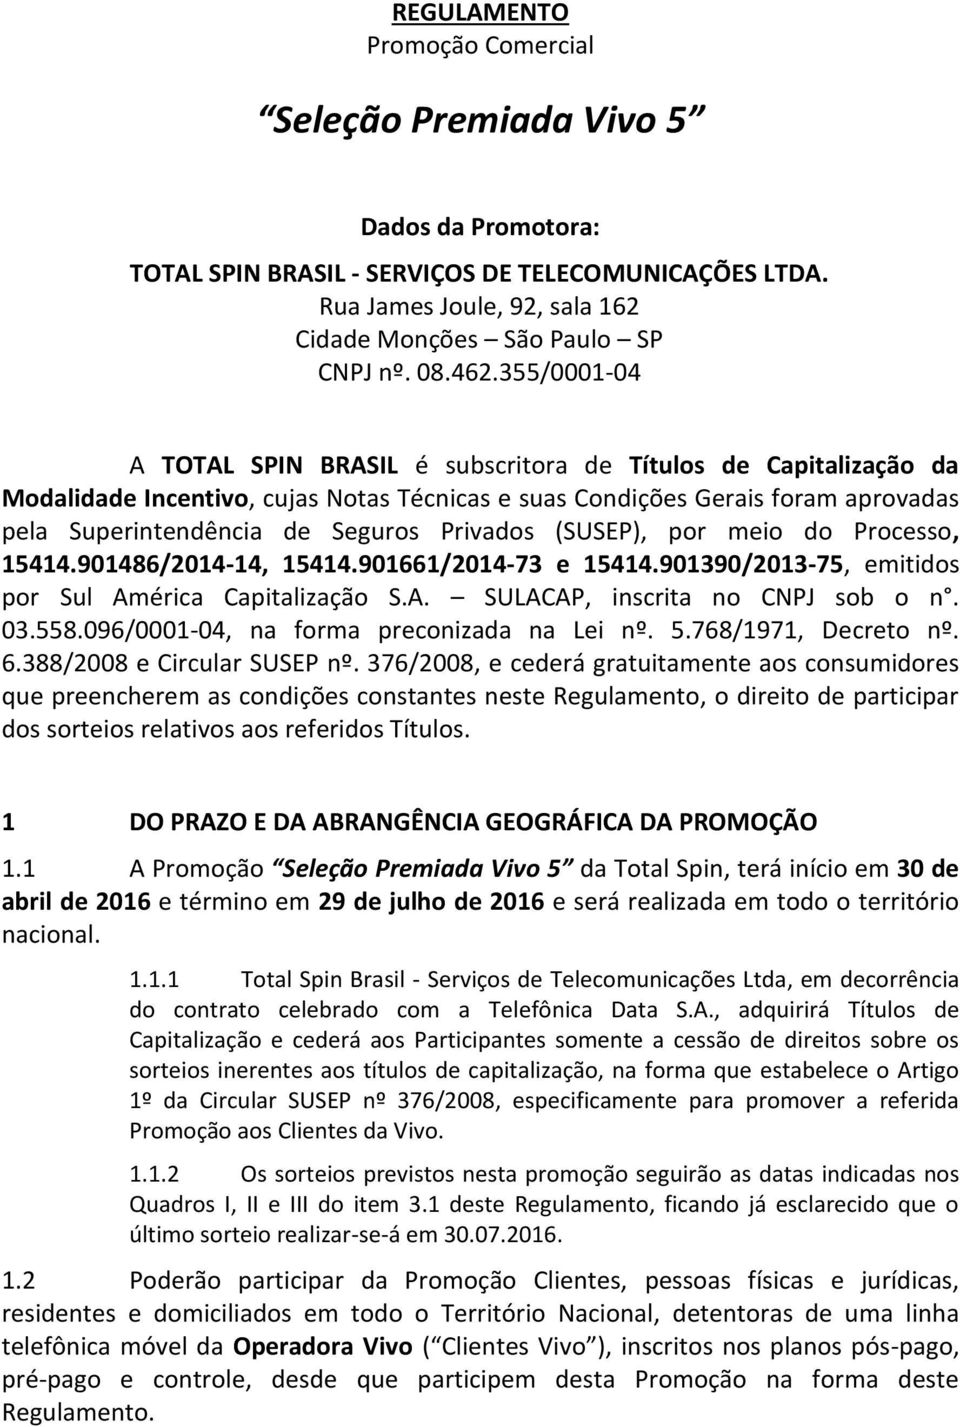 Privados (SUSEP), por meio do Processo, 15414.901486/2014-14, 15414.901661/2014-73 e 15414.901390/2013-75, emitidos por Sul América Capitalização S.A. SULACAP, inscrita no CNPJ sob o n. 03.558.